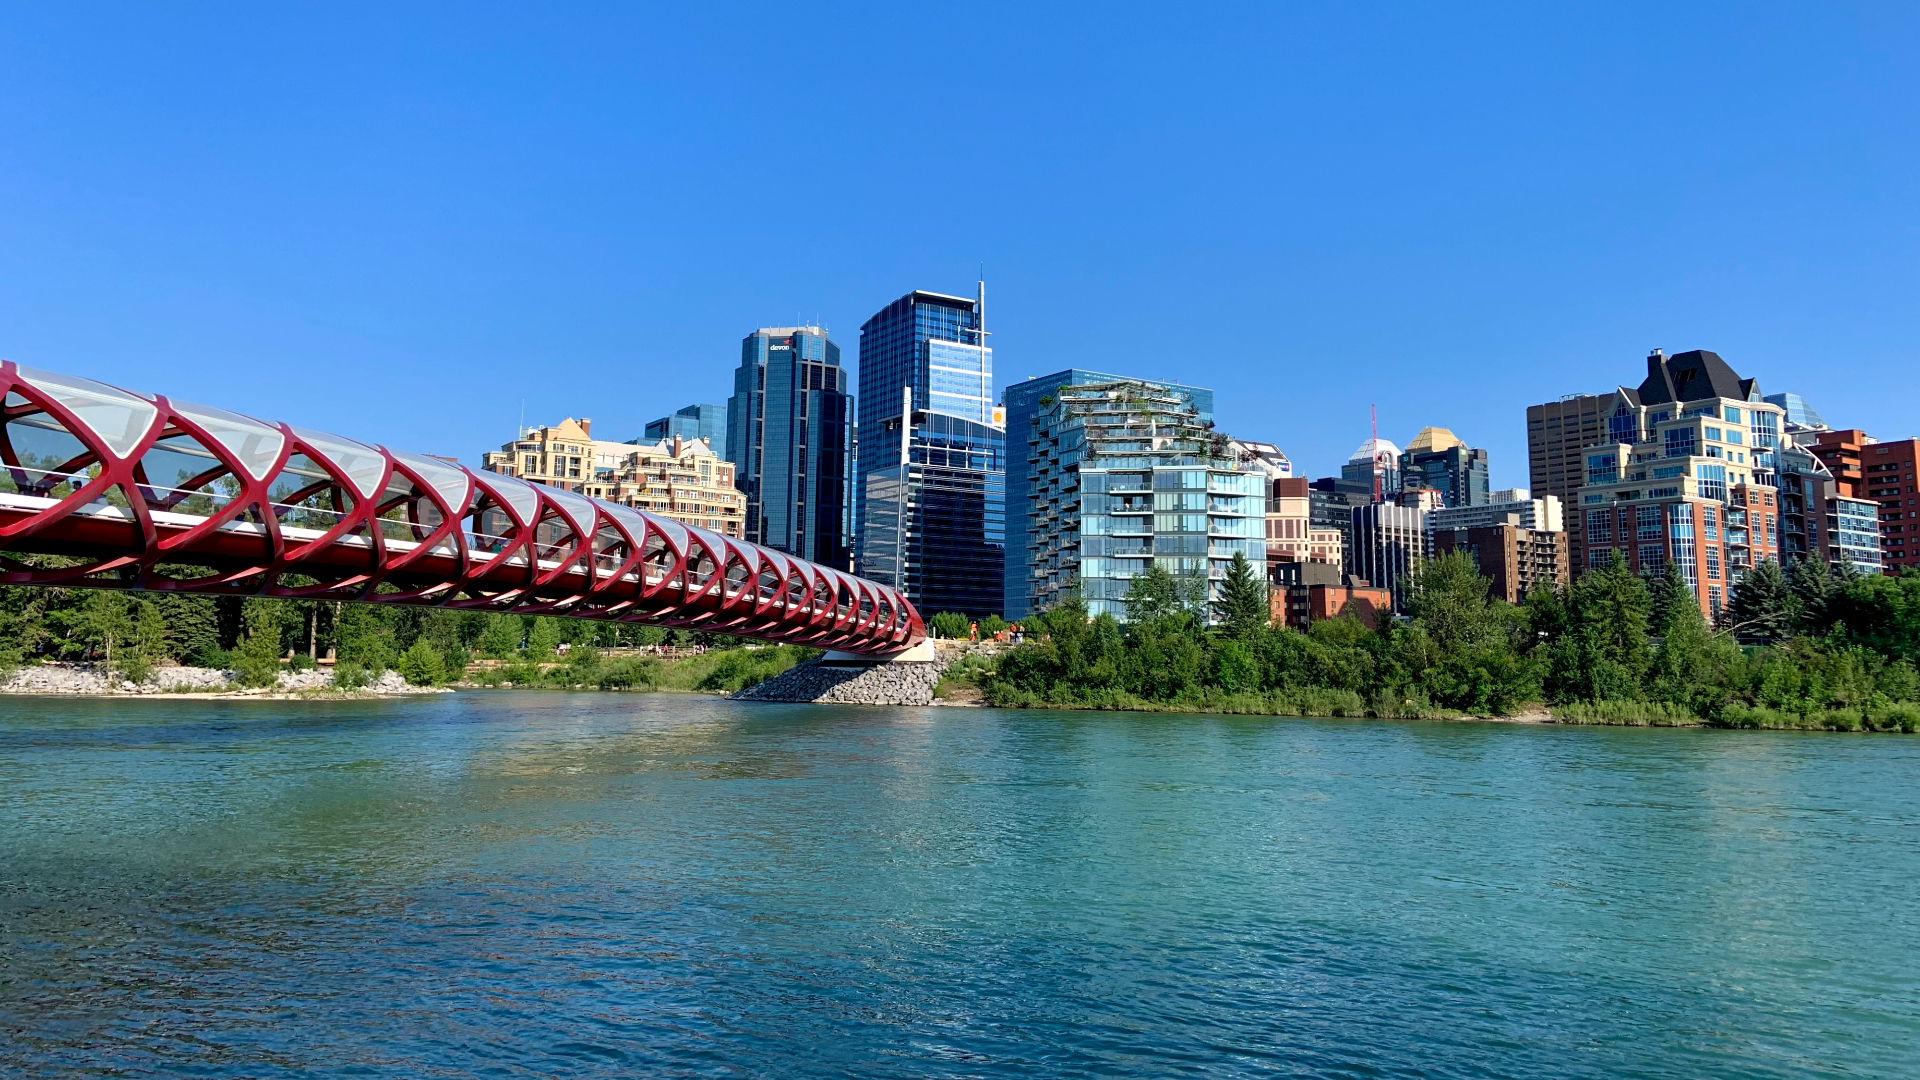 Calgary has a new brand 'Blue Sky City'